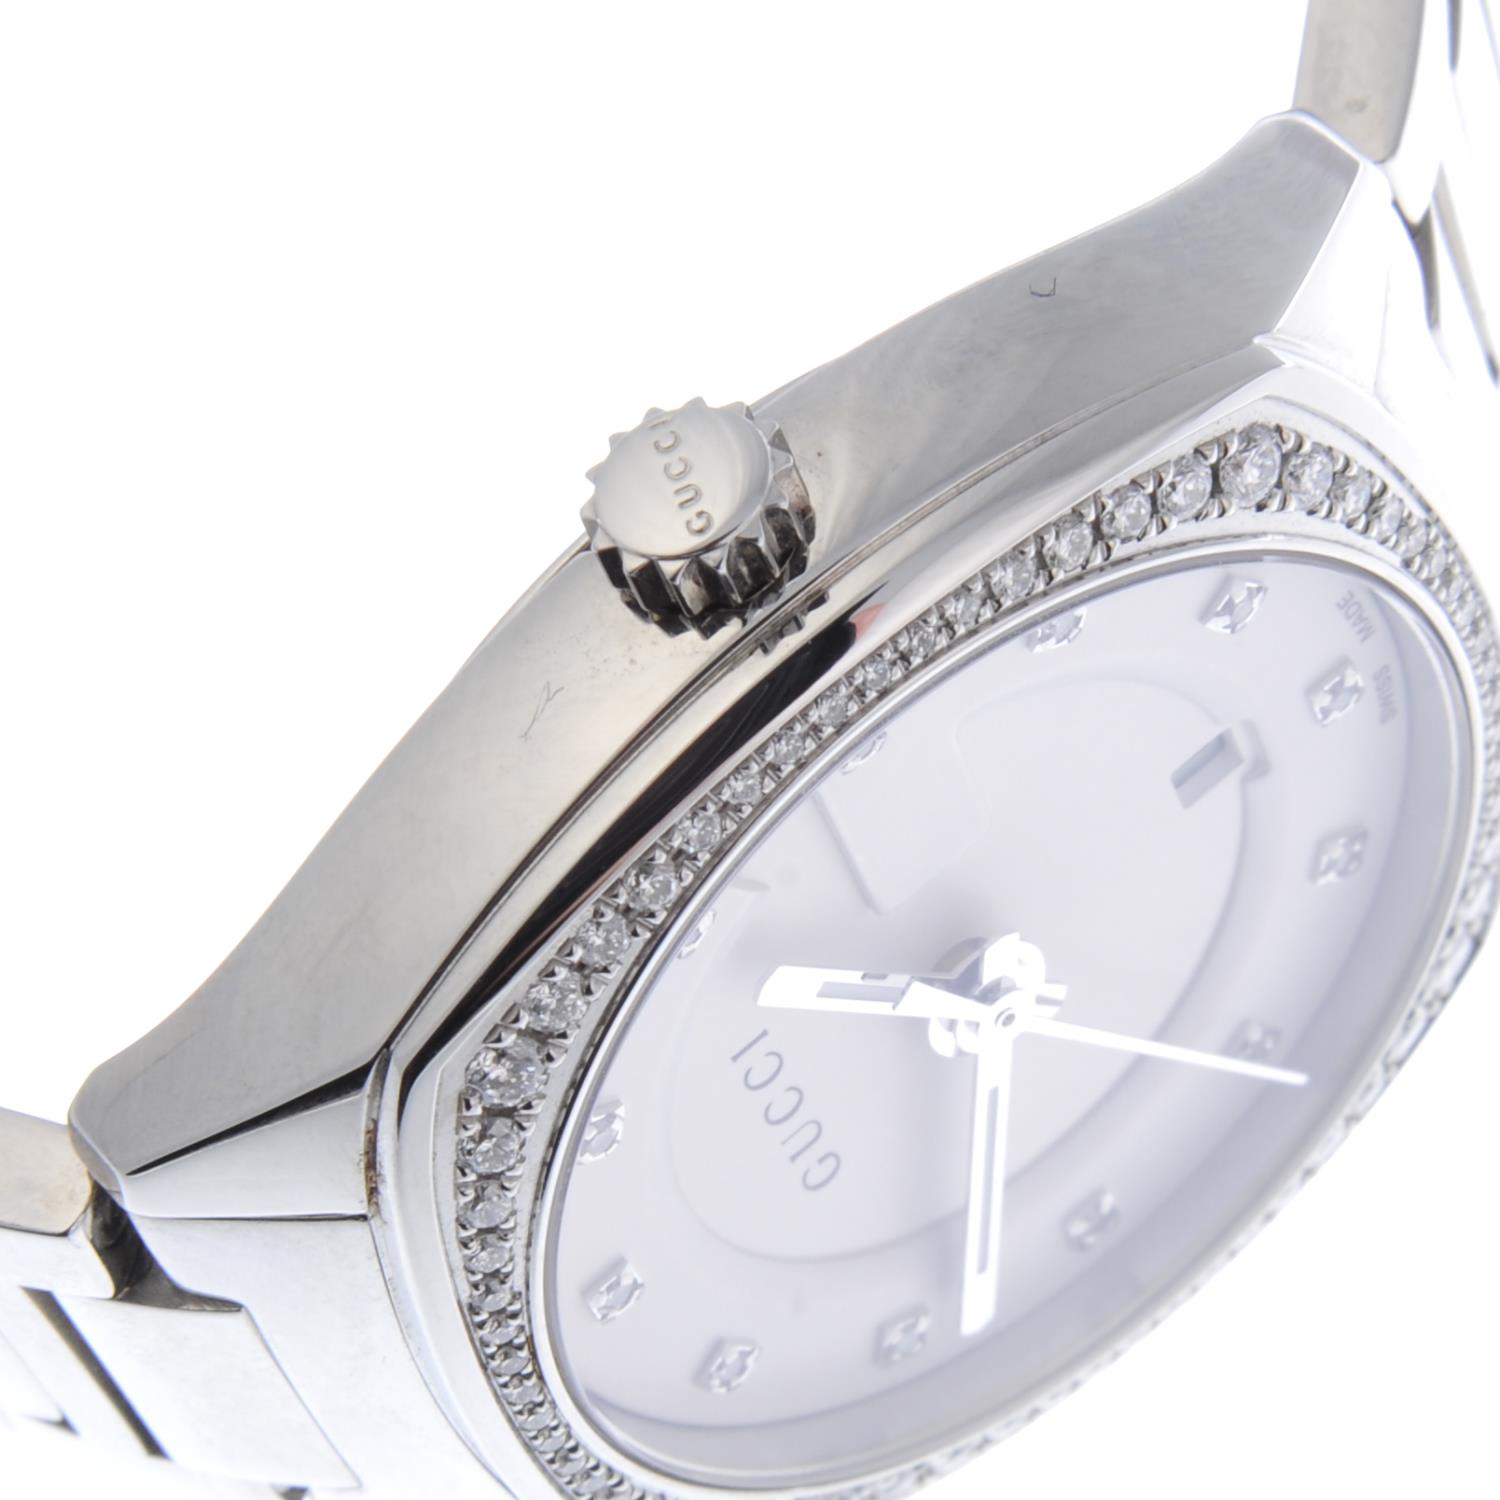 GUCCI - a lady's bracelet watch. - Image 3 of 4